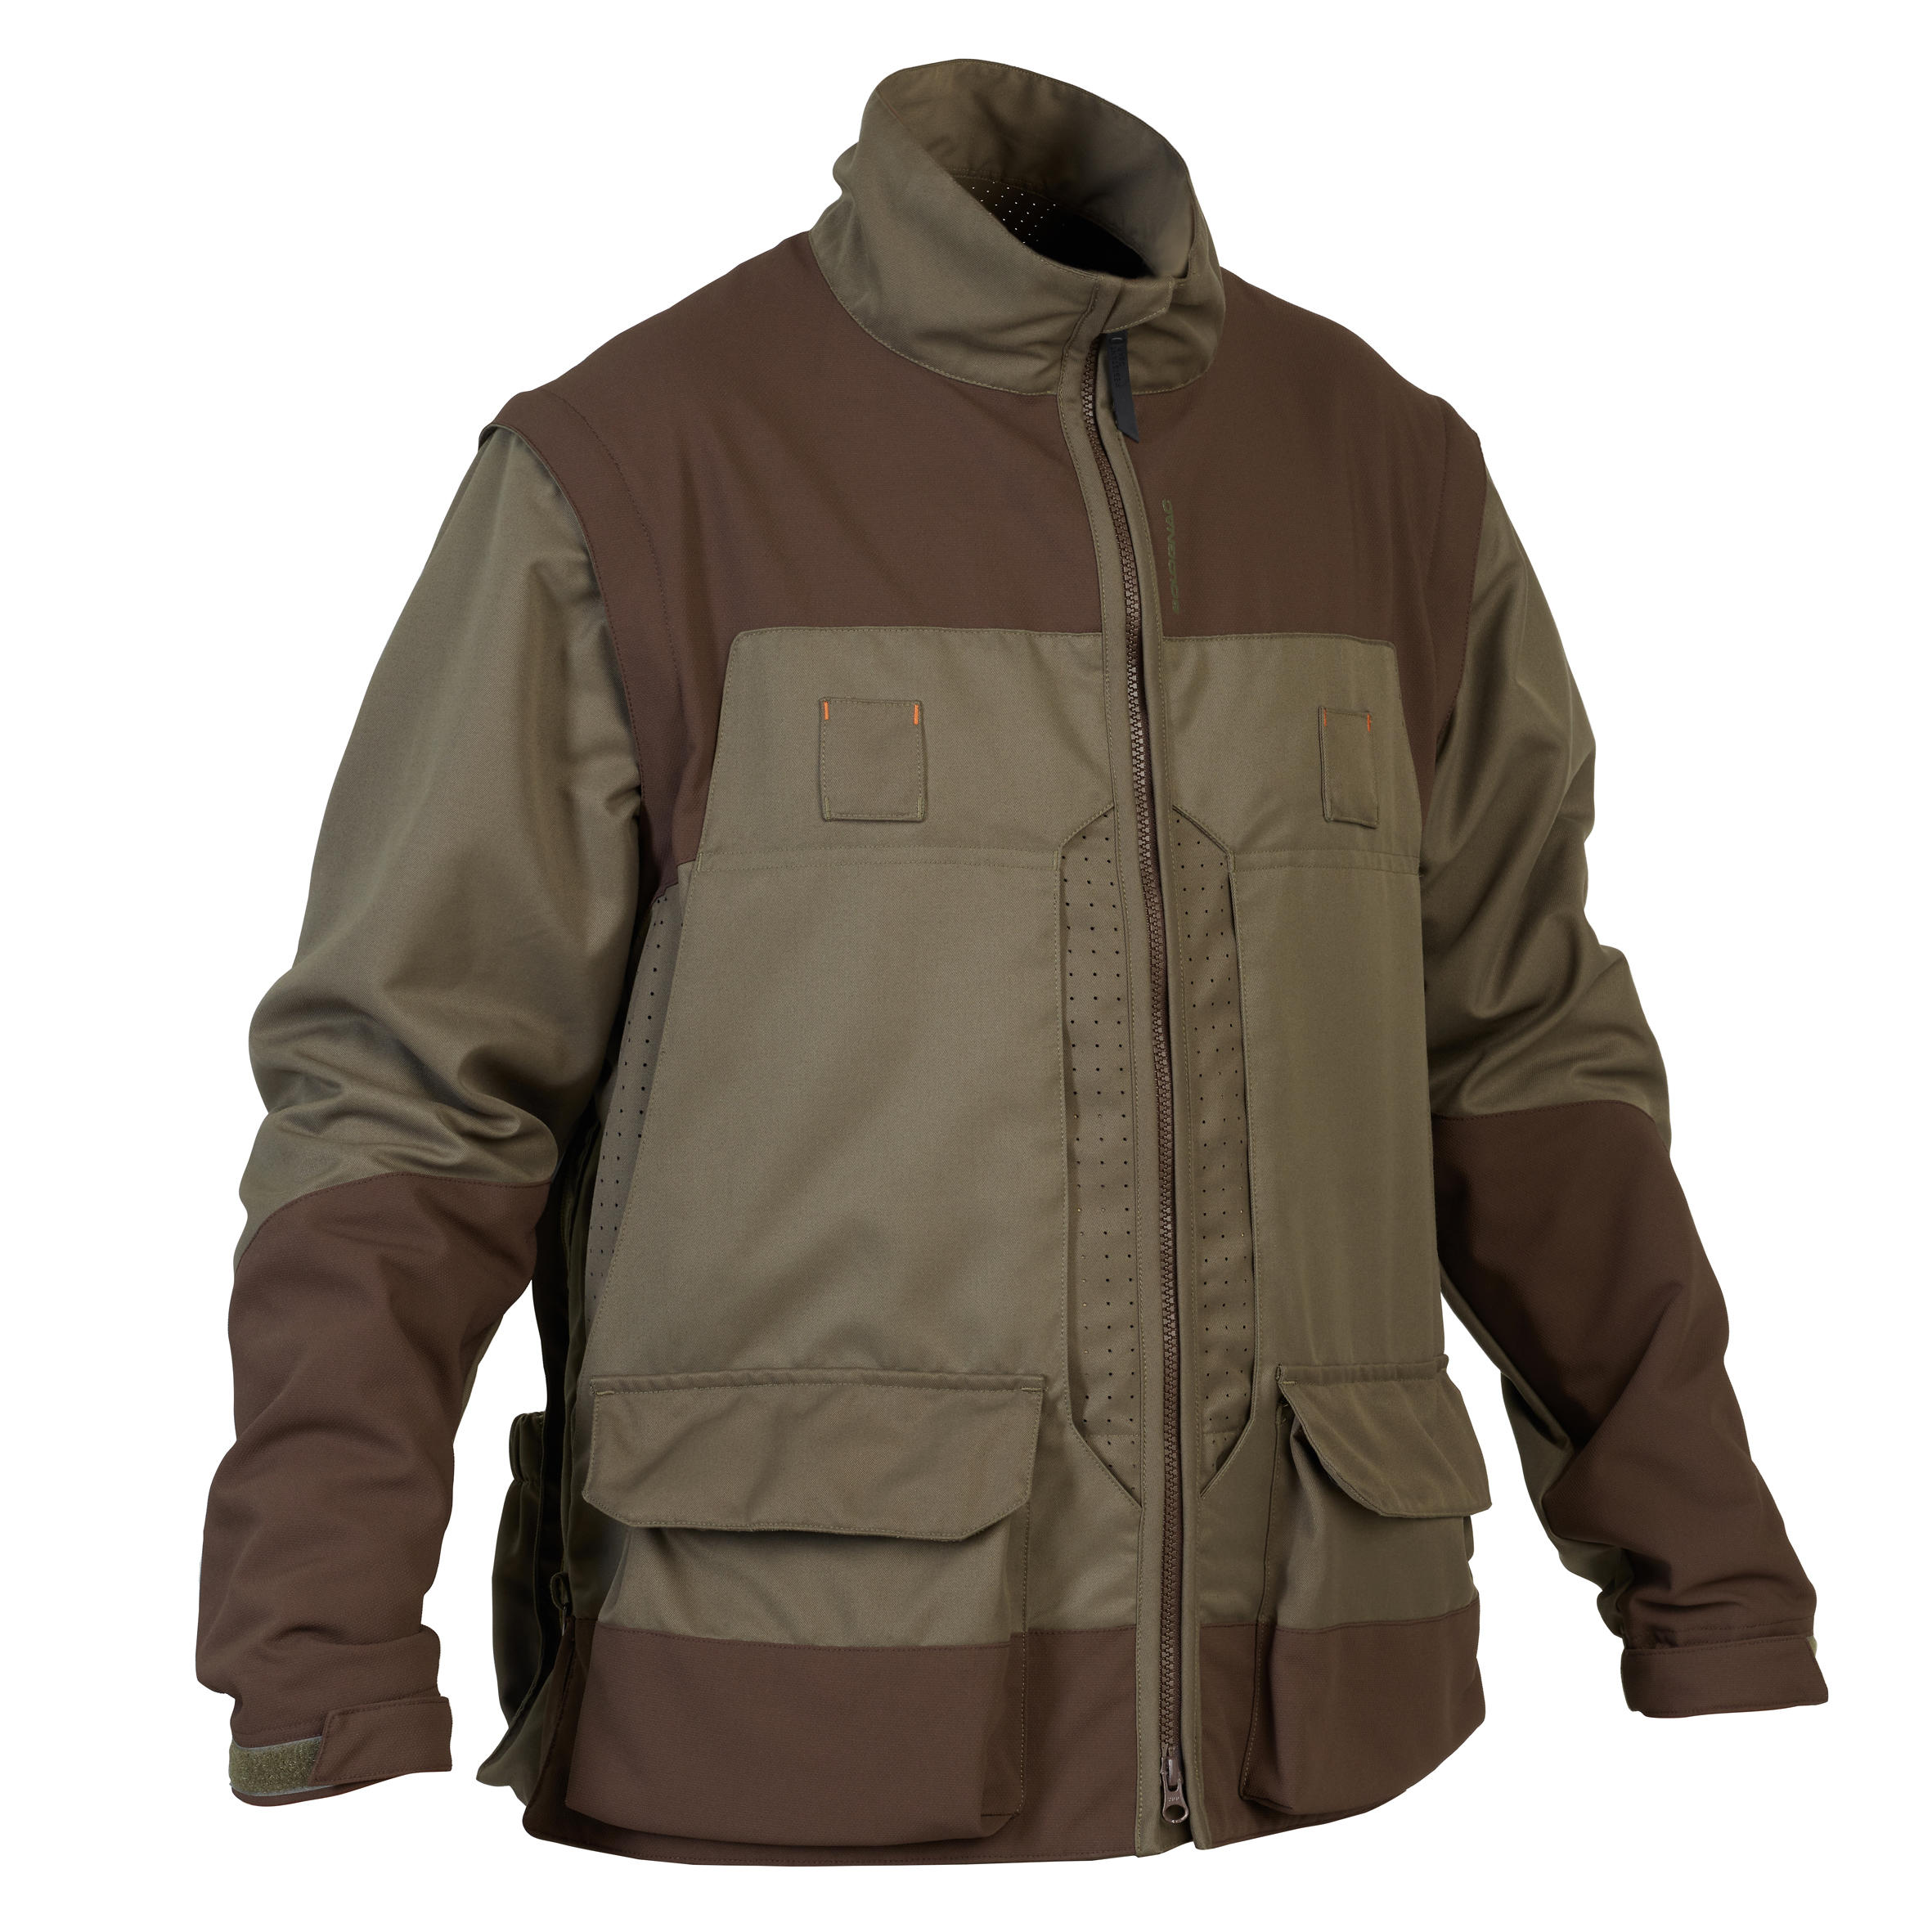 Jachetă SG900 respirantă cu mâneci detașabile bărbați La Oferta Online decathlon imagine La Oferta Online